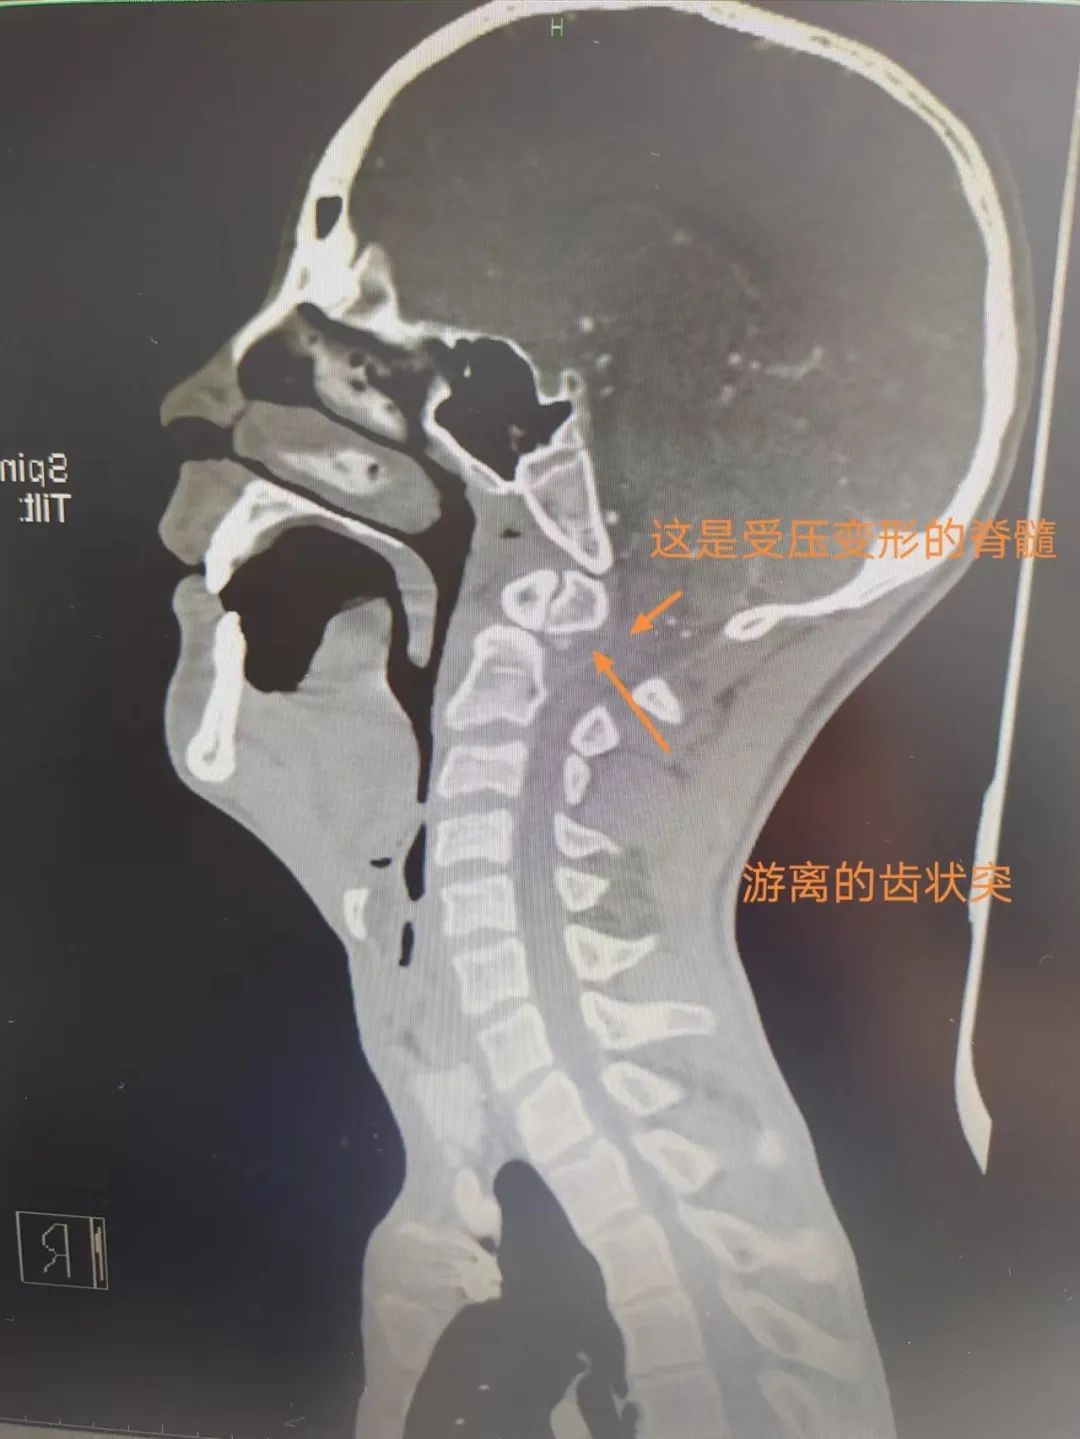 岳池县人民医院脊柱脊髓外科成功为 15 岁脑瘫患者施行高难度颈椎手术